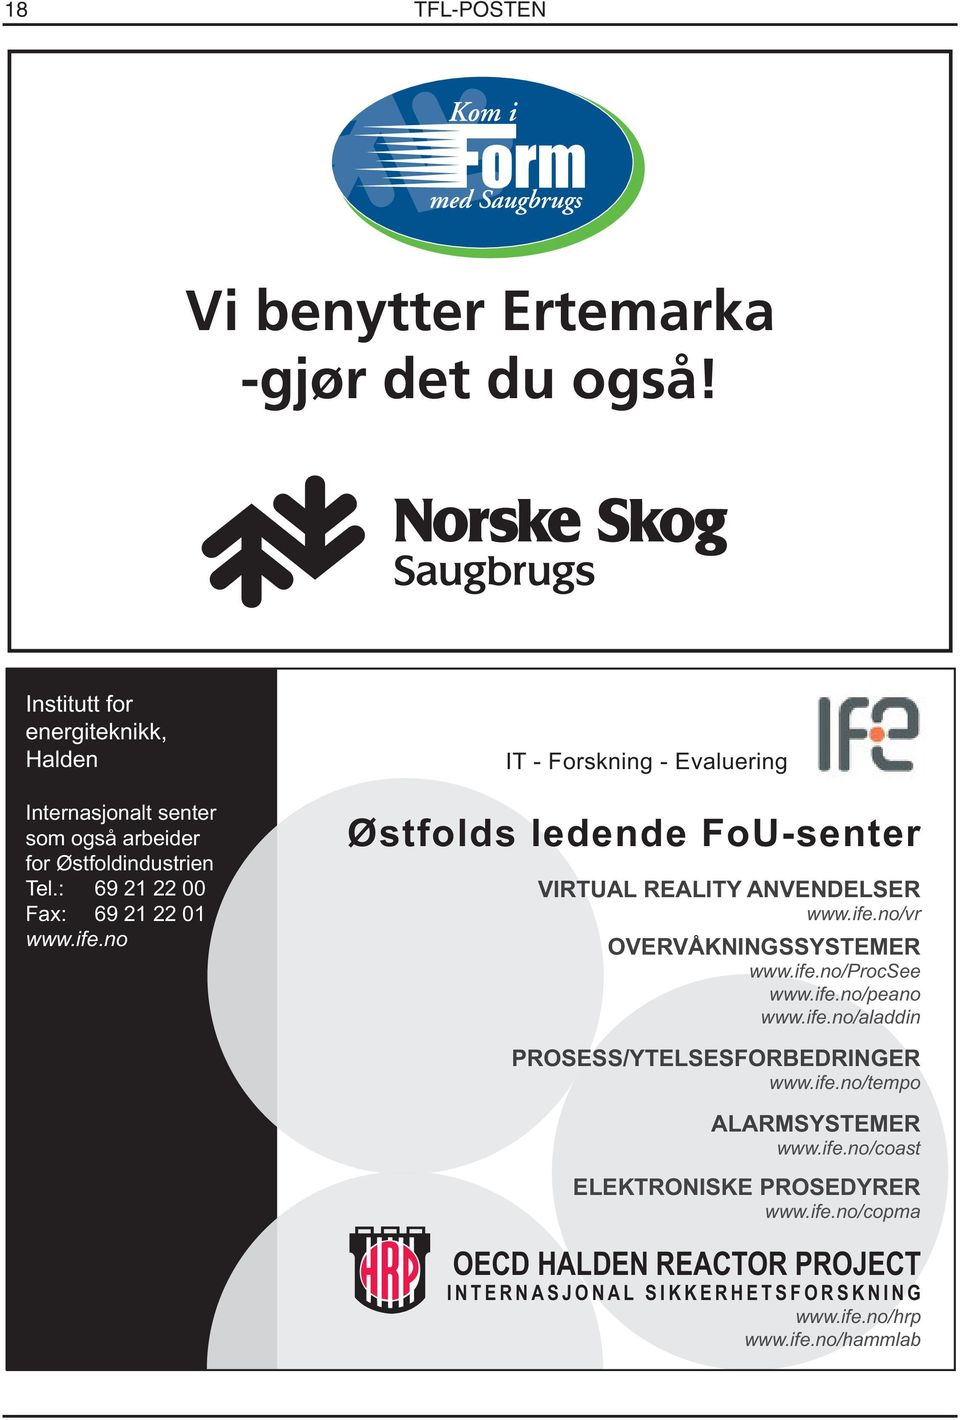 no IT - Forskning - Evaluering Østfolds ledende FoU-senter VIRTUAL REALITY ANVENDELSER www.ife.no/vr OVERVÅKNINGSSYSTEMER www.ife.no/procsee www.